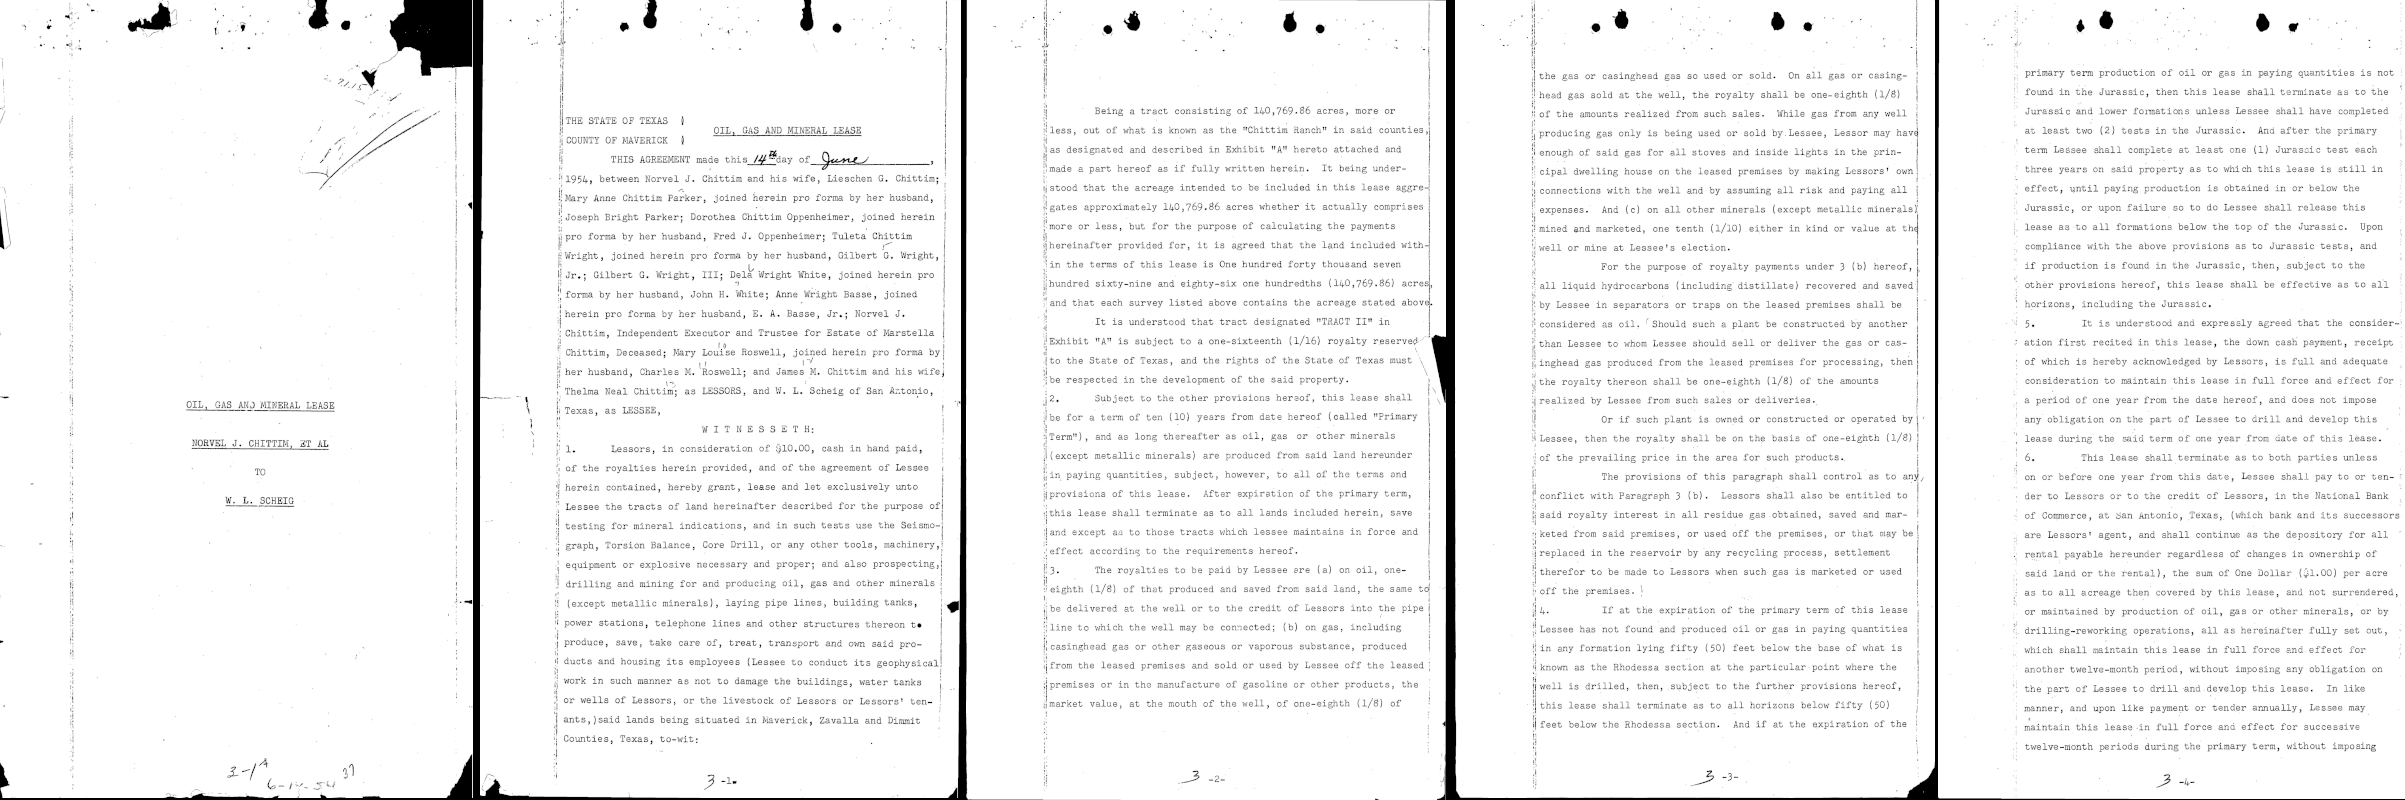 Las primeras cinco páginas de un archivo PDF